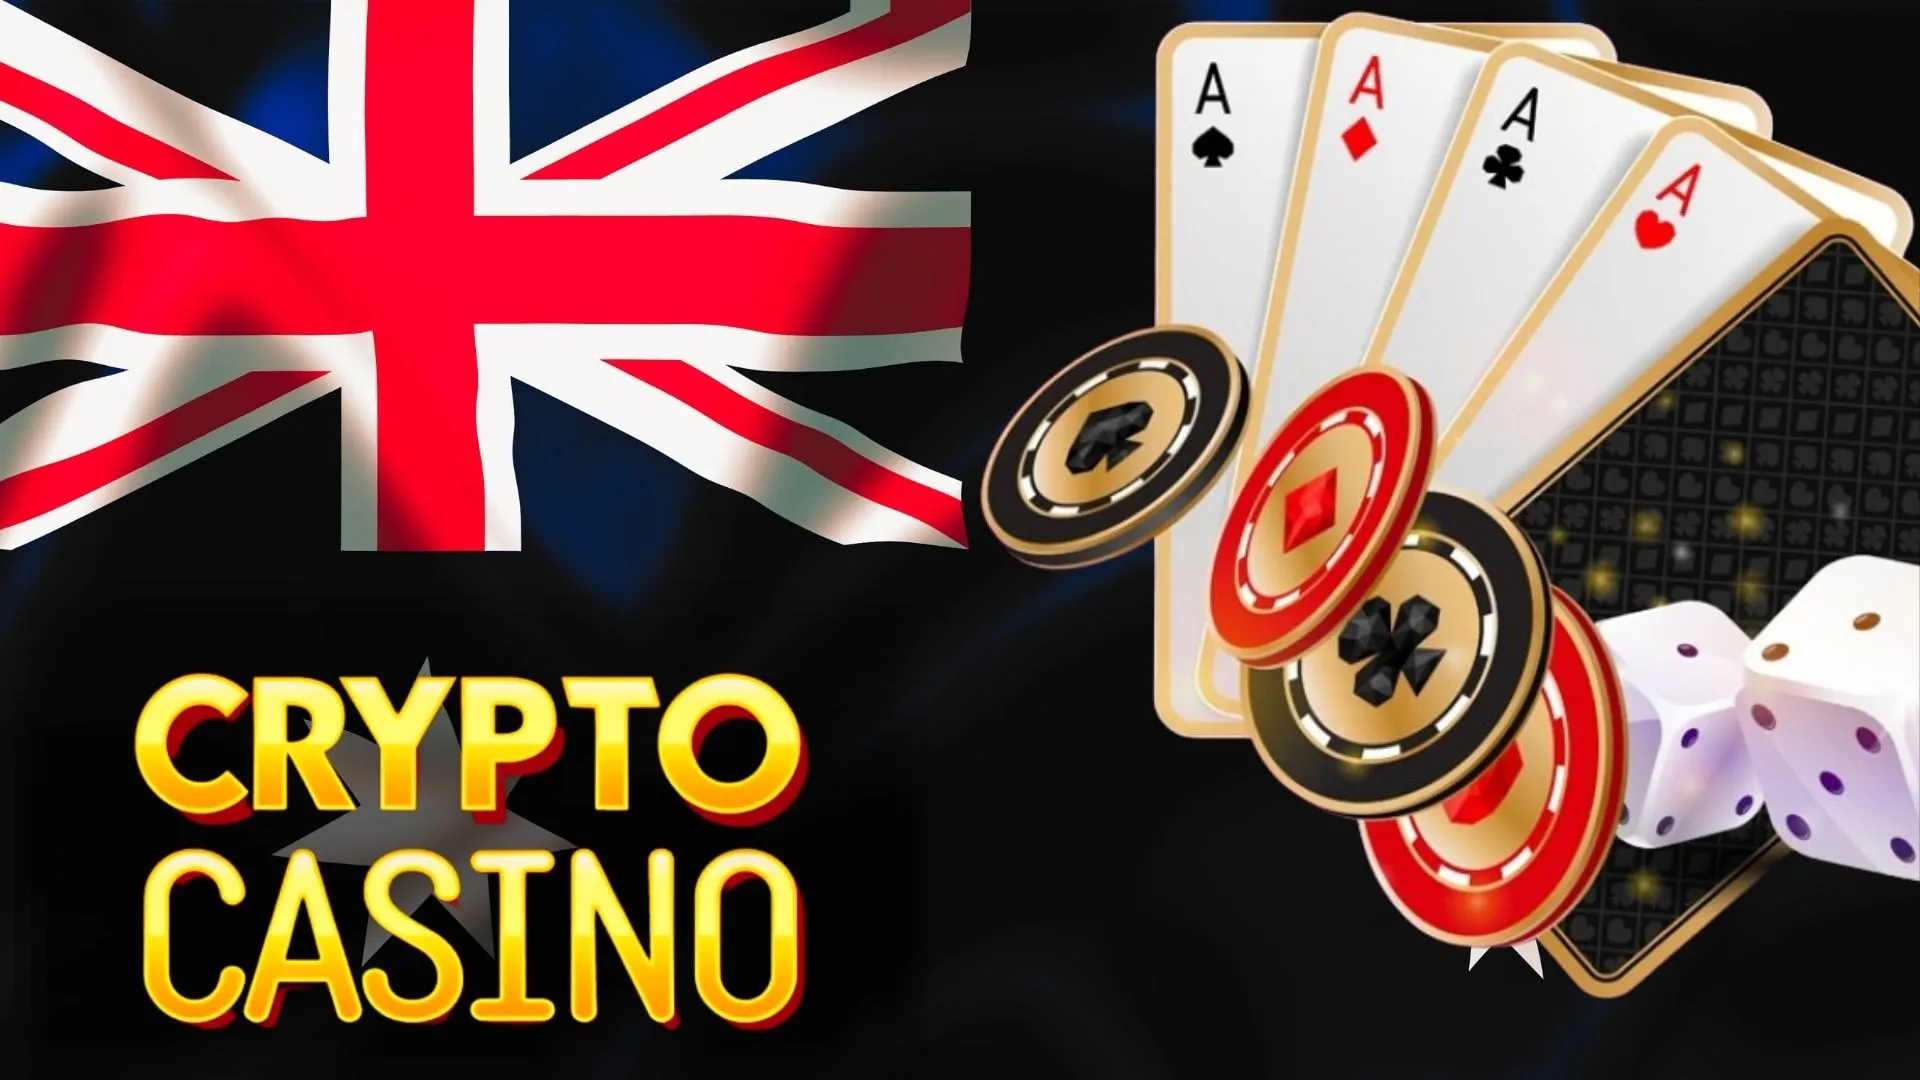 La correzione della Casino Con Crypto dovrebbe richiedere 55 passaggi?